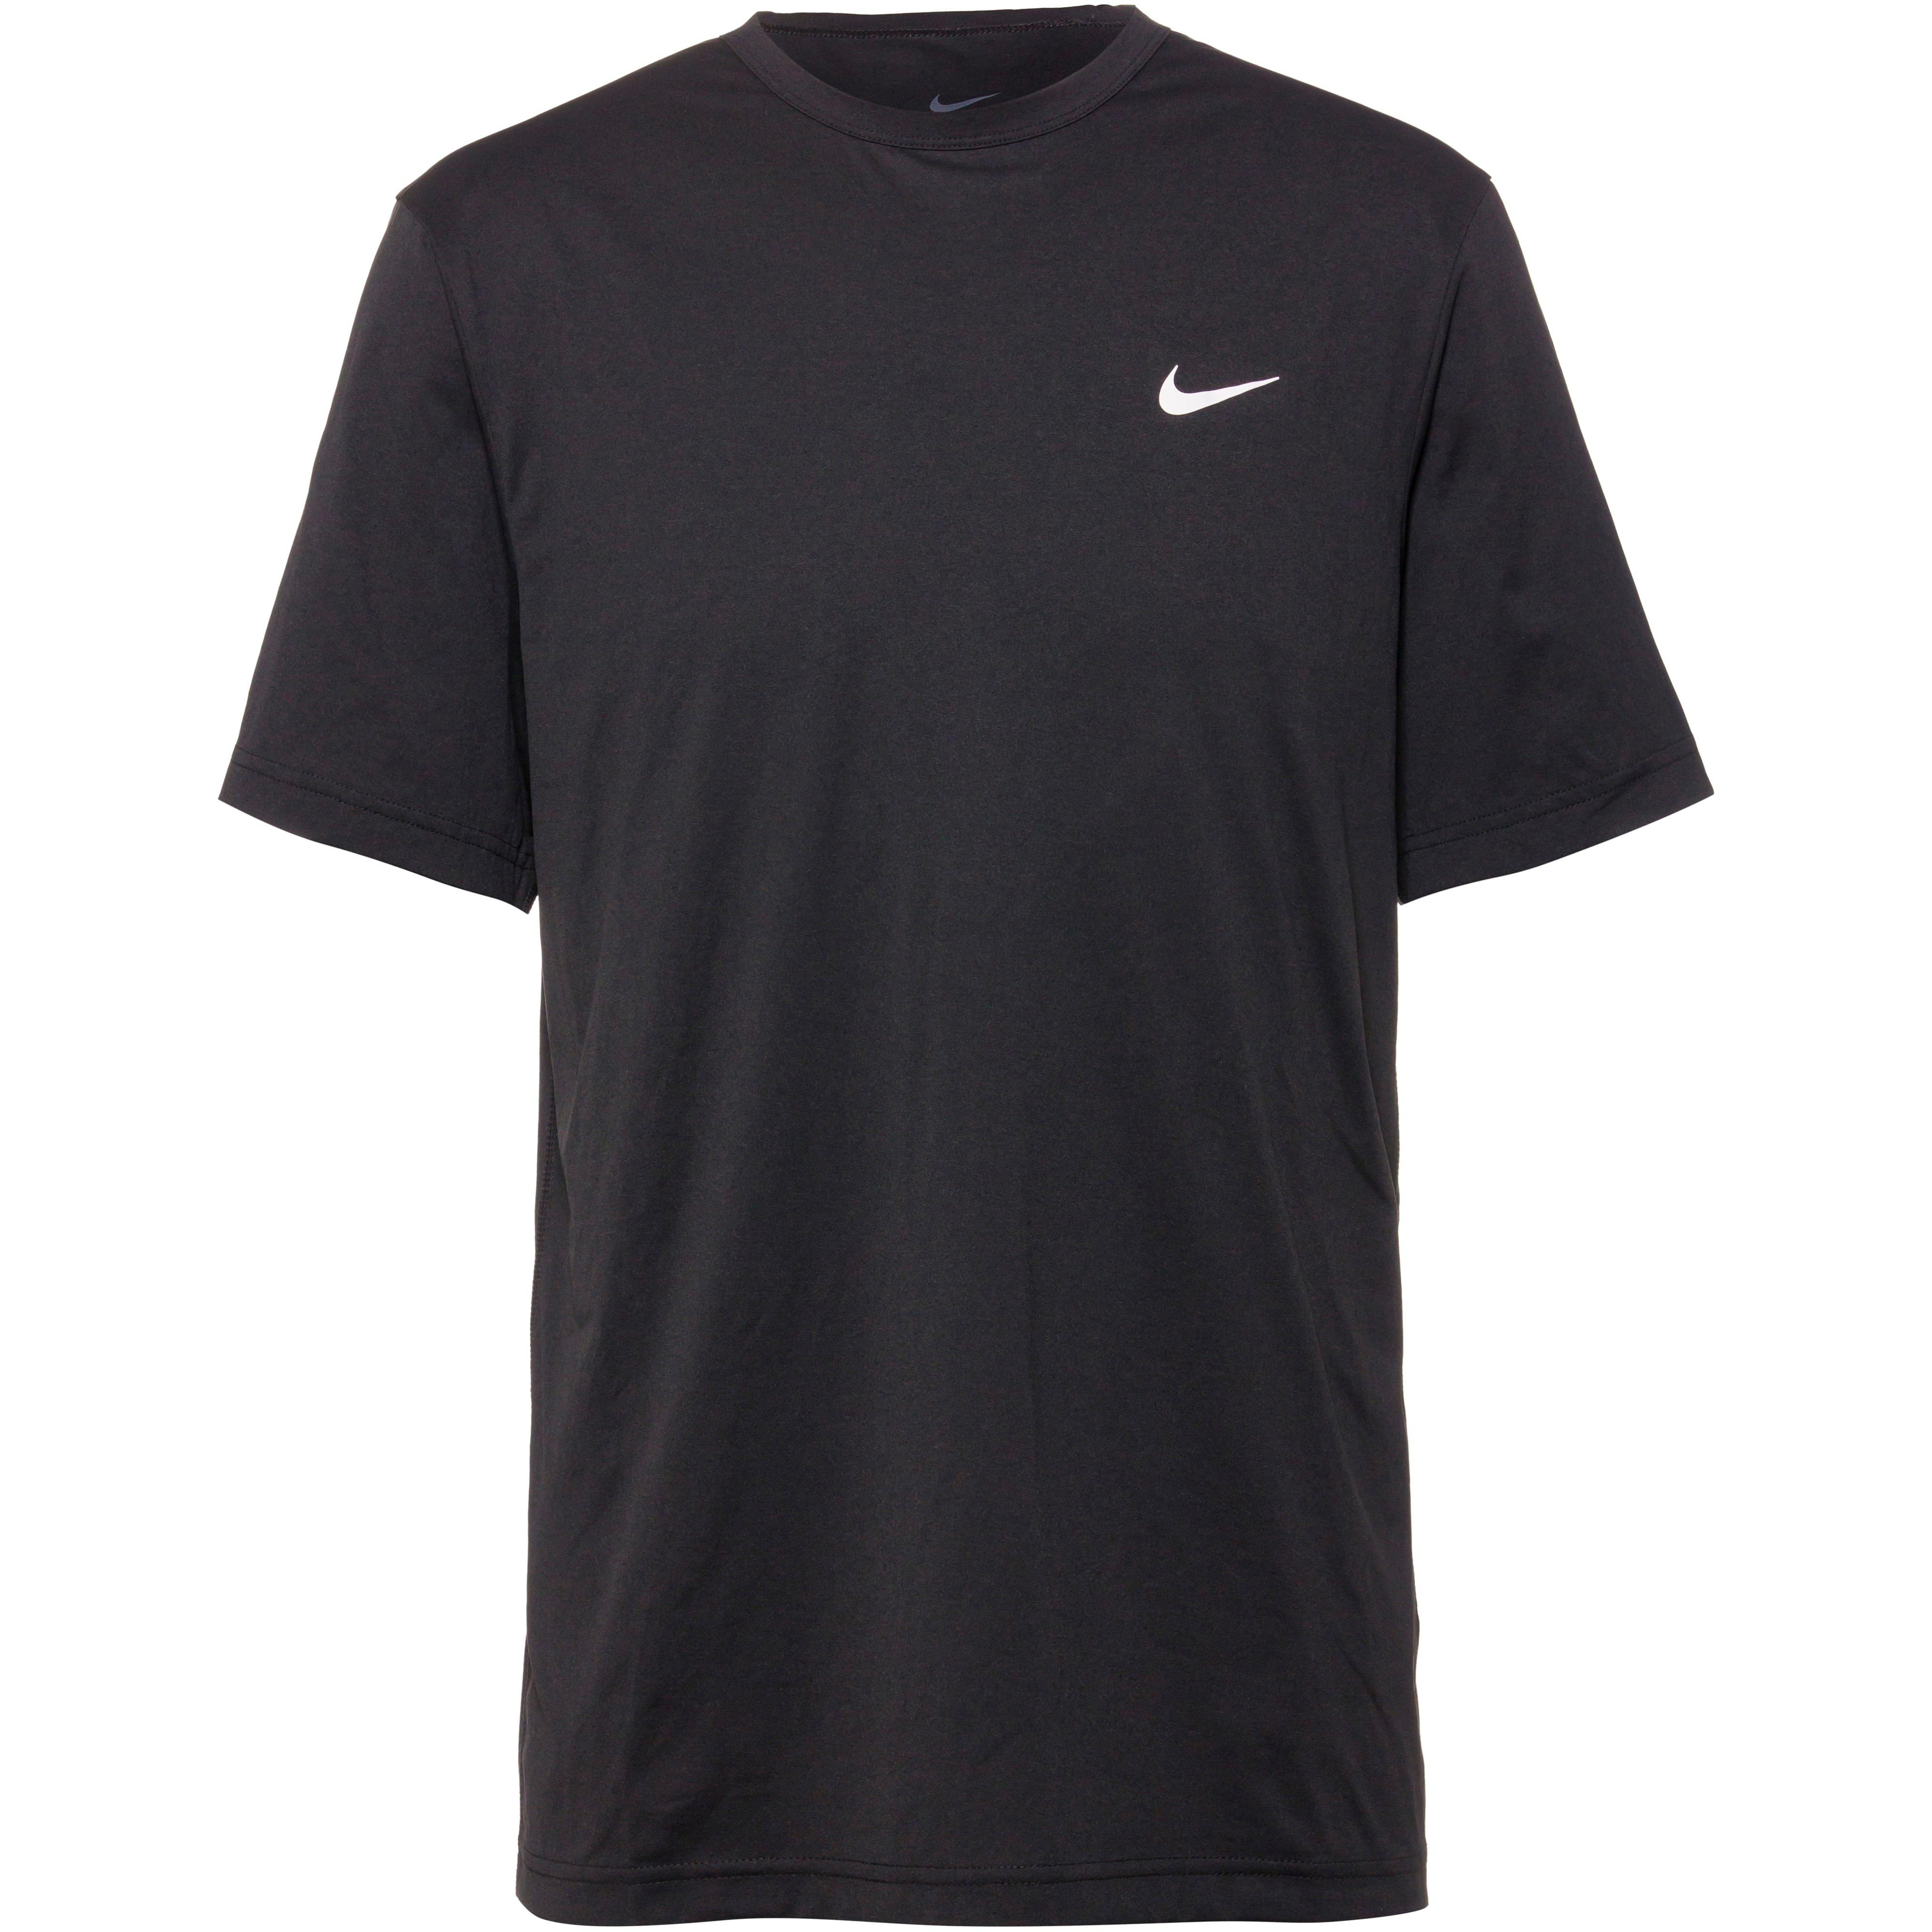 bei bestellen Nike SportScheck online bequem Shirts